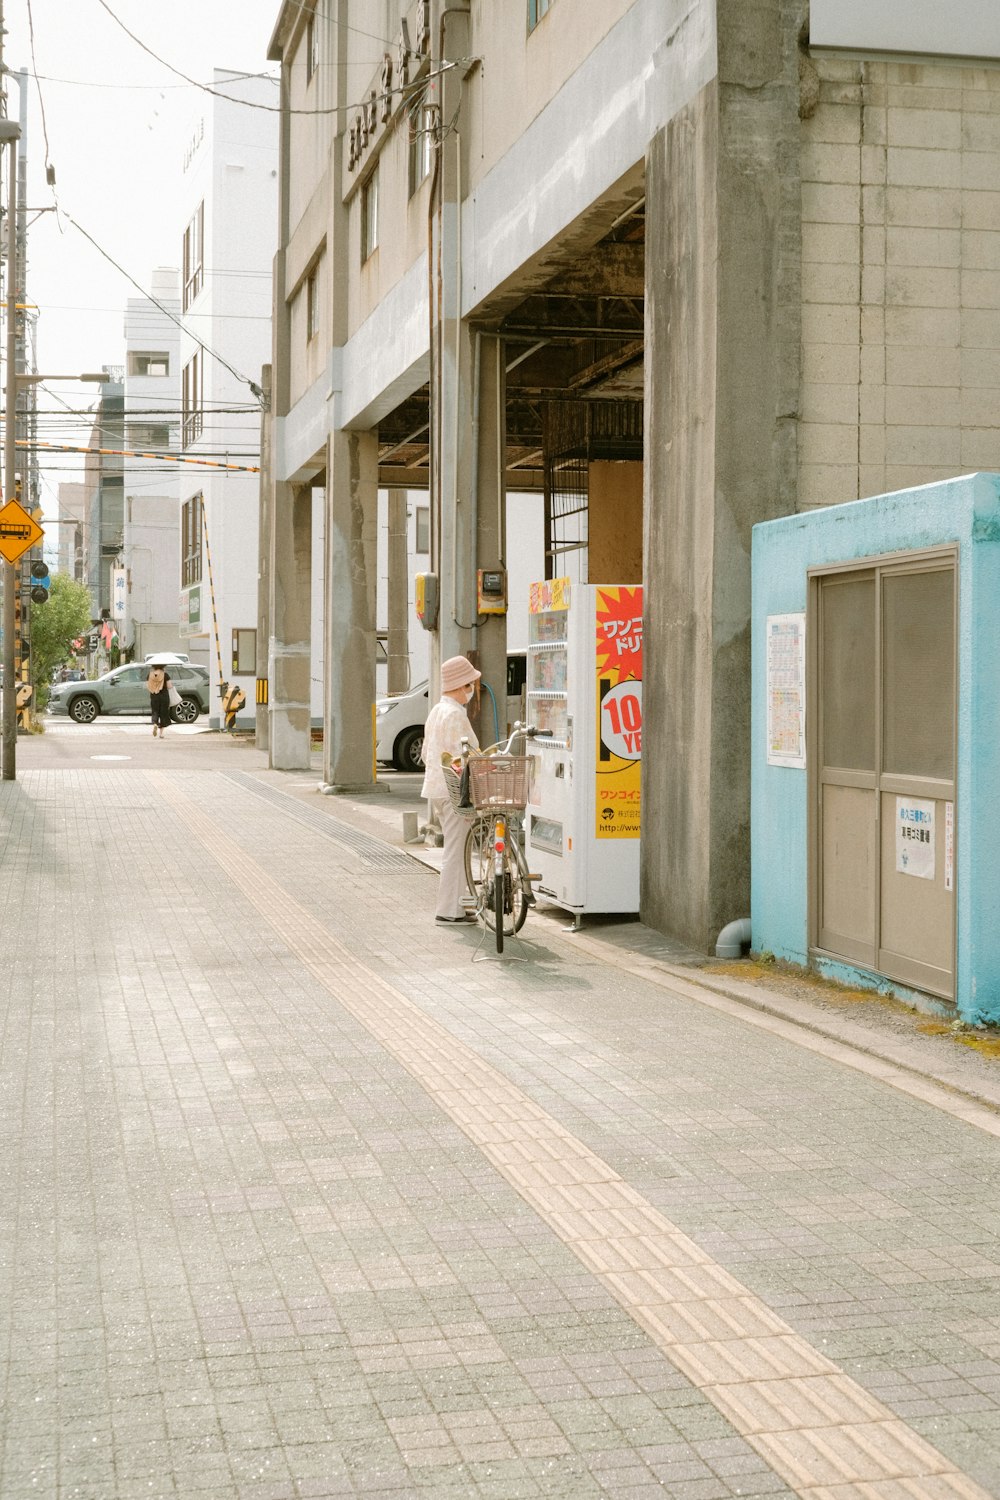 man in white shirt riding bicycle on sidewalk during daytime